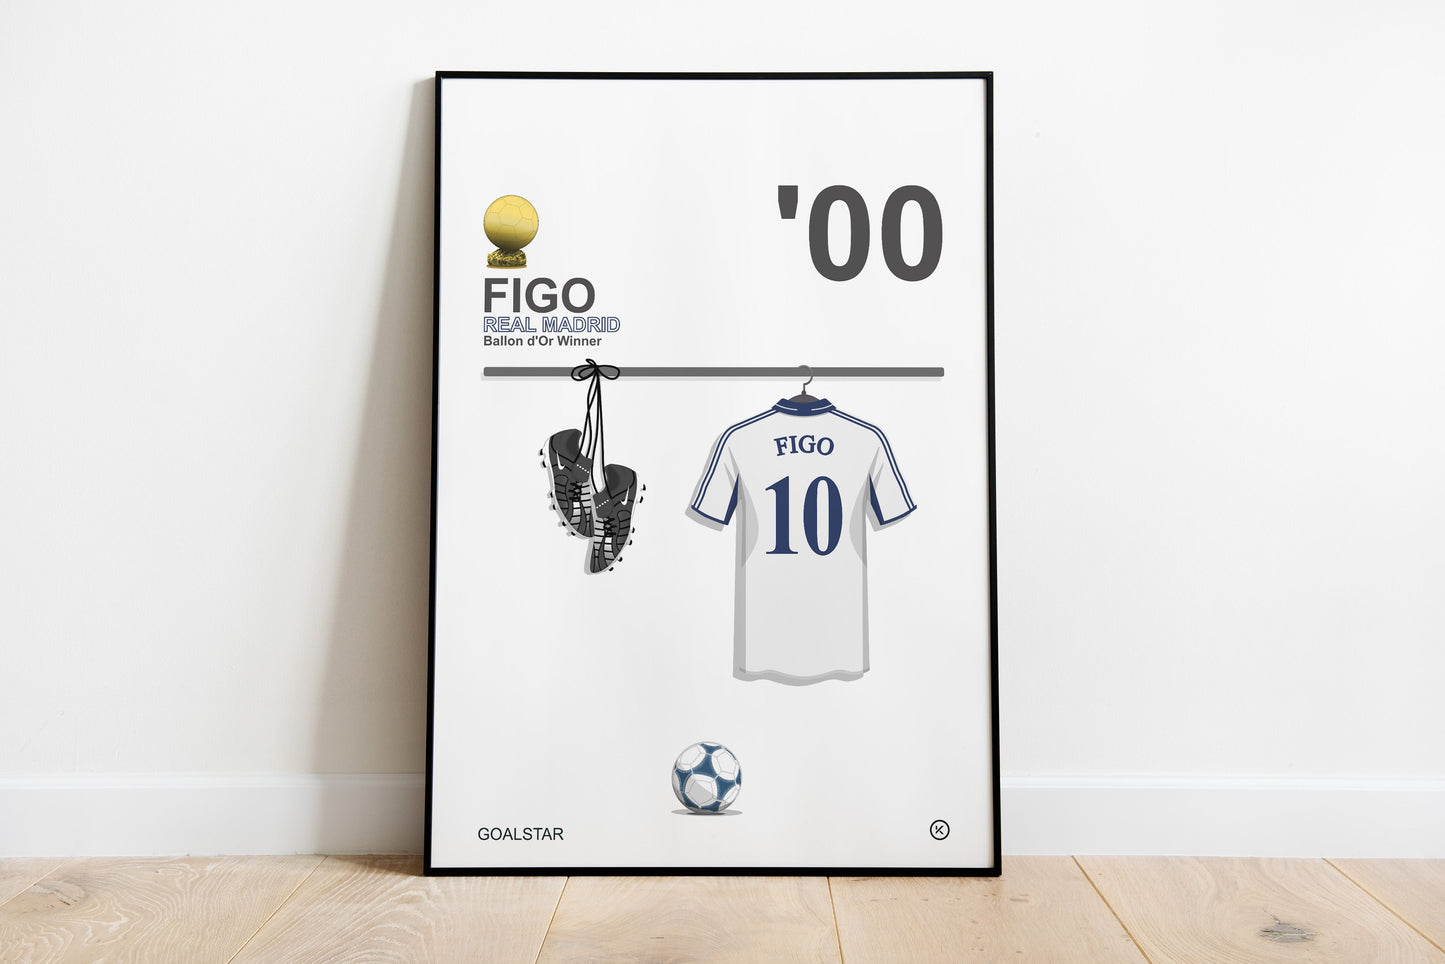 Luis Figo - Ballon d'Or Winner 2000